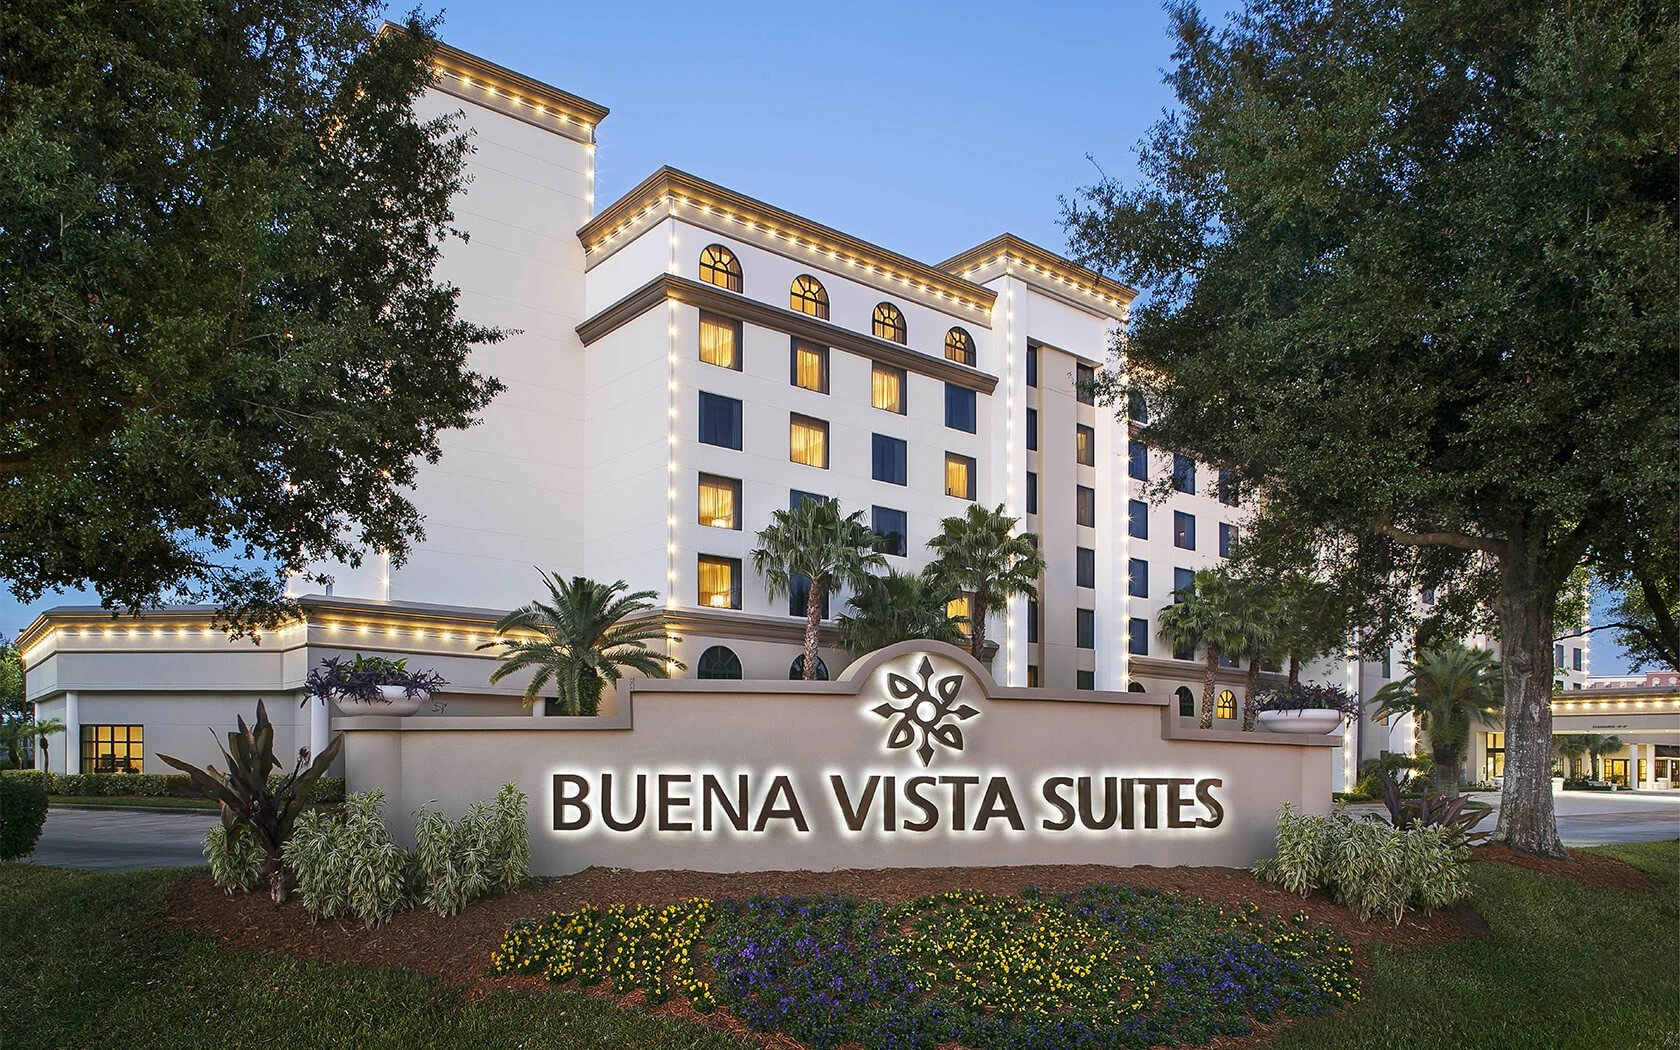 Site at Buena Vista Suites